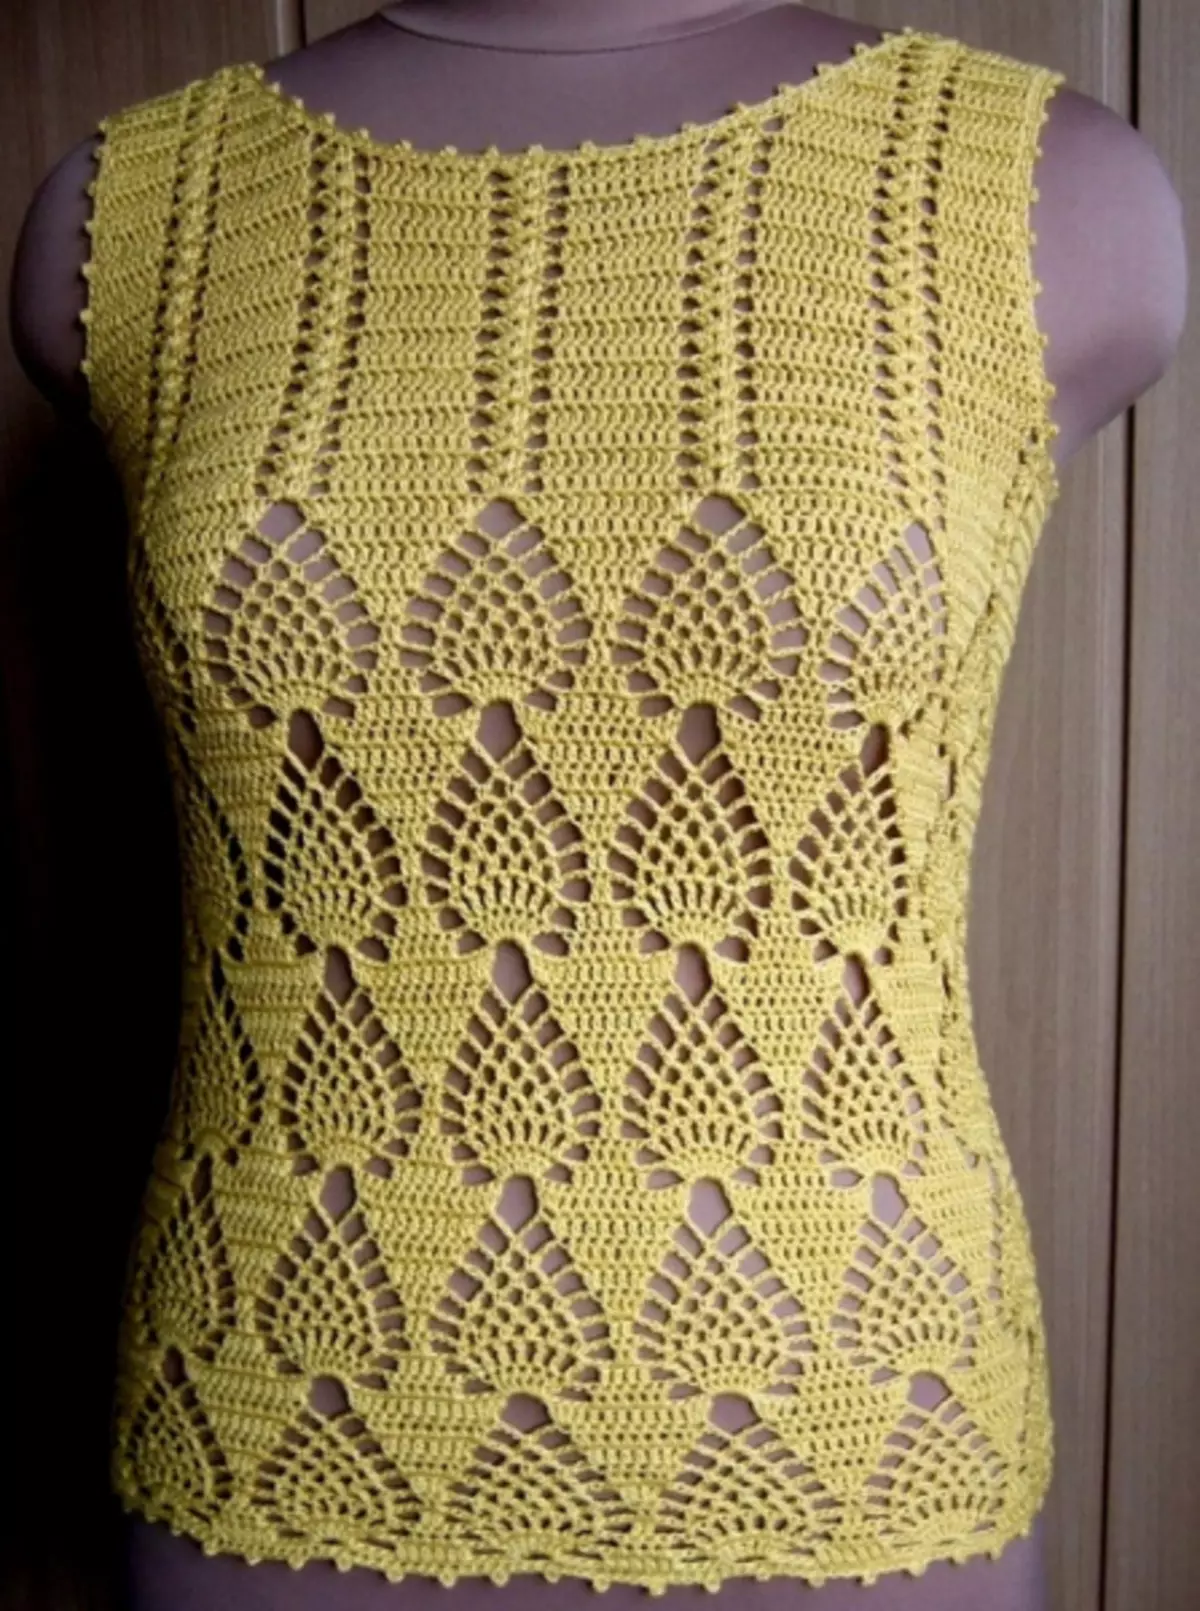 Mijarên Crochet ên Openwork With Schemes ji bo keç û jinên bi wêne û vîdyoyê re